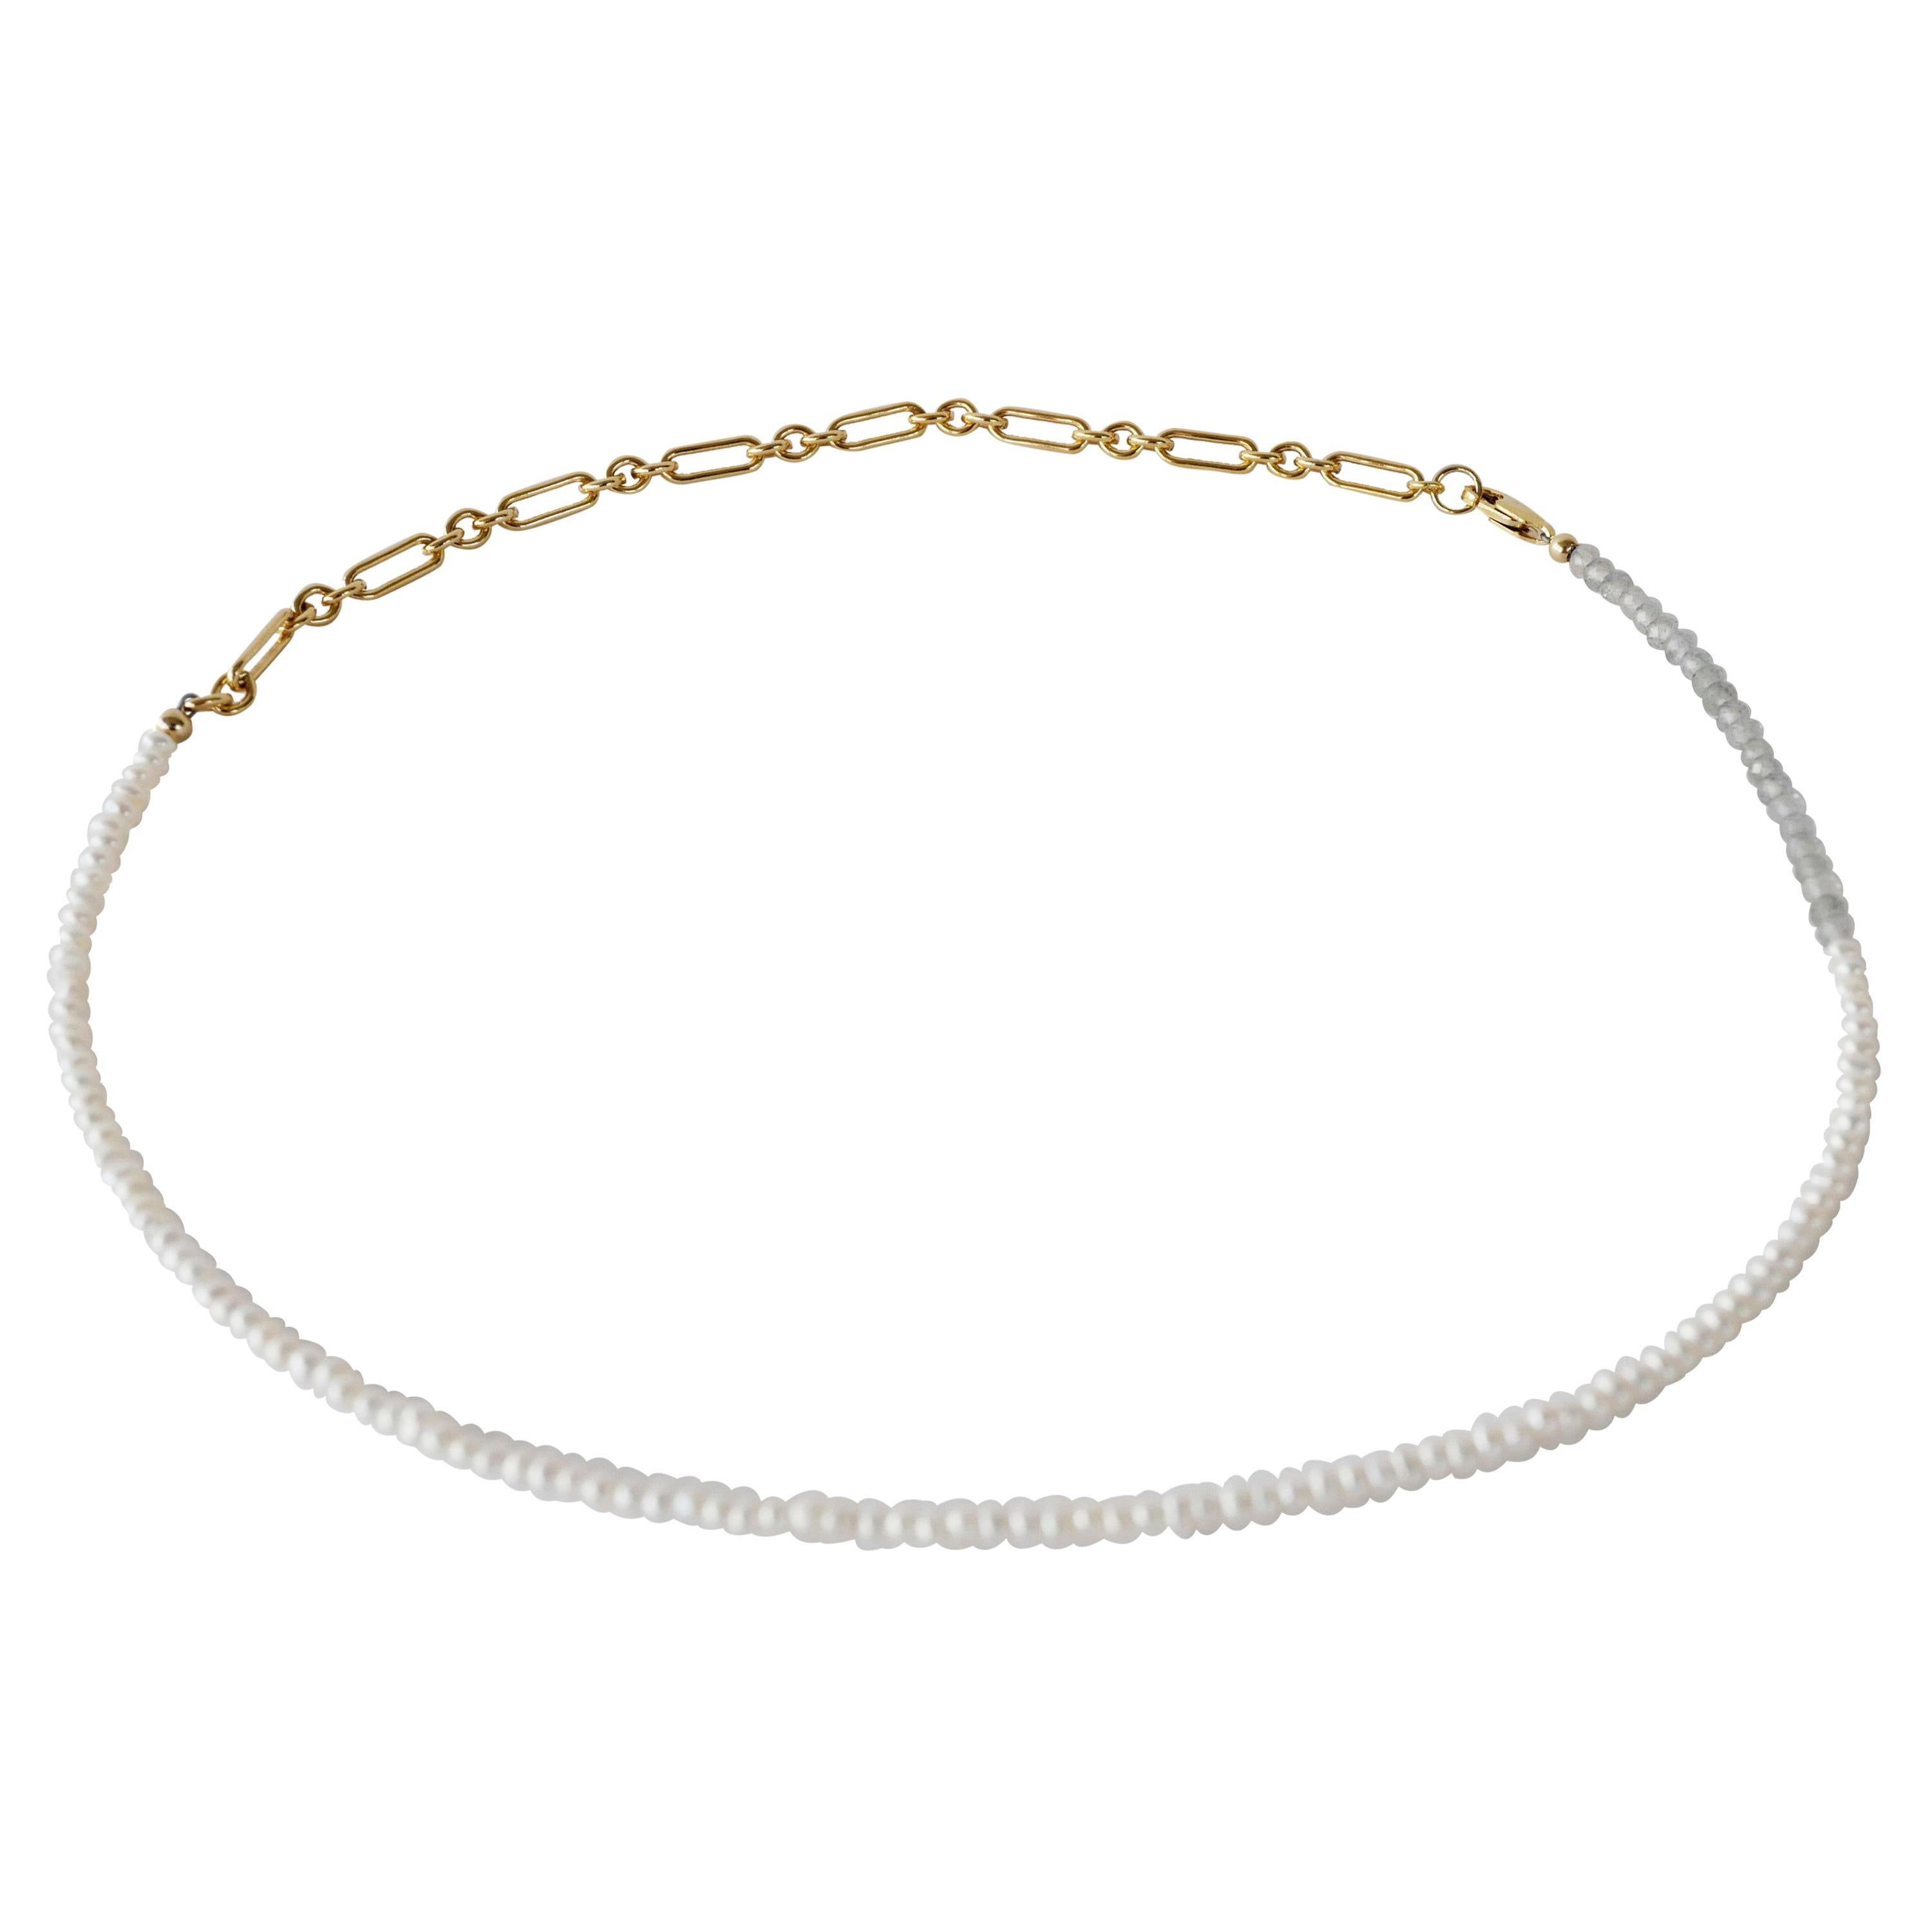 Weiße Perle Halskette Labradorit Goldfarbene Kette Perlen J Dauphin